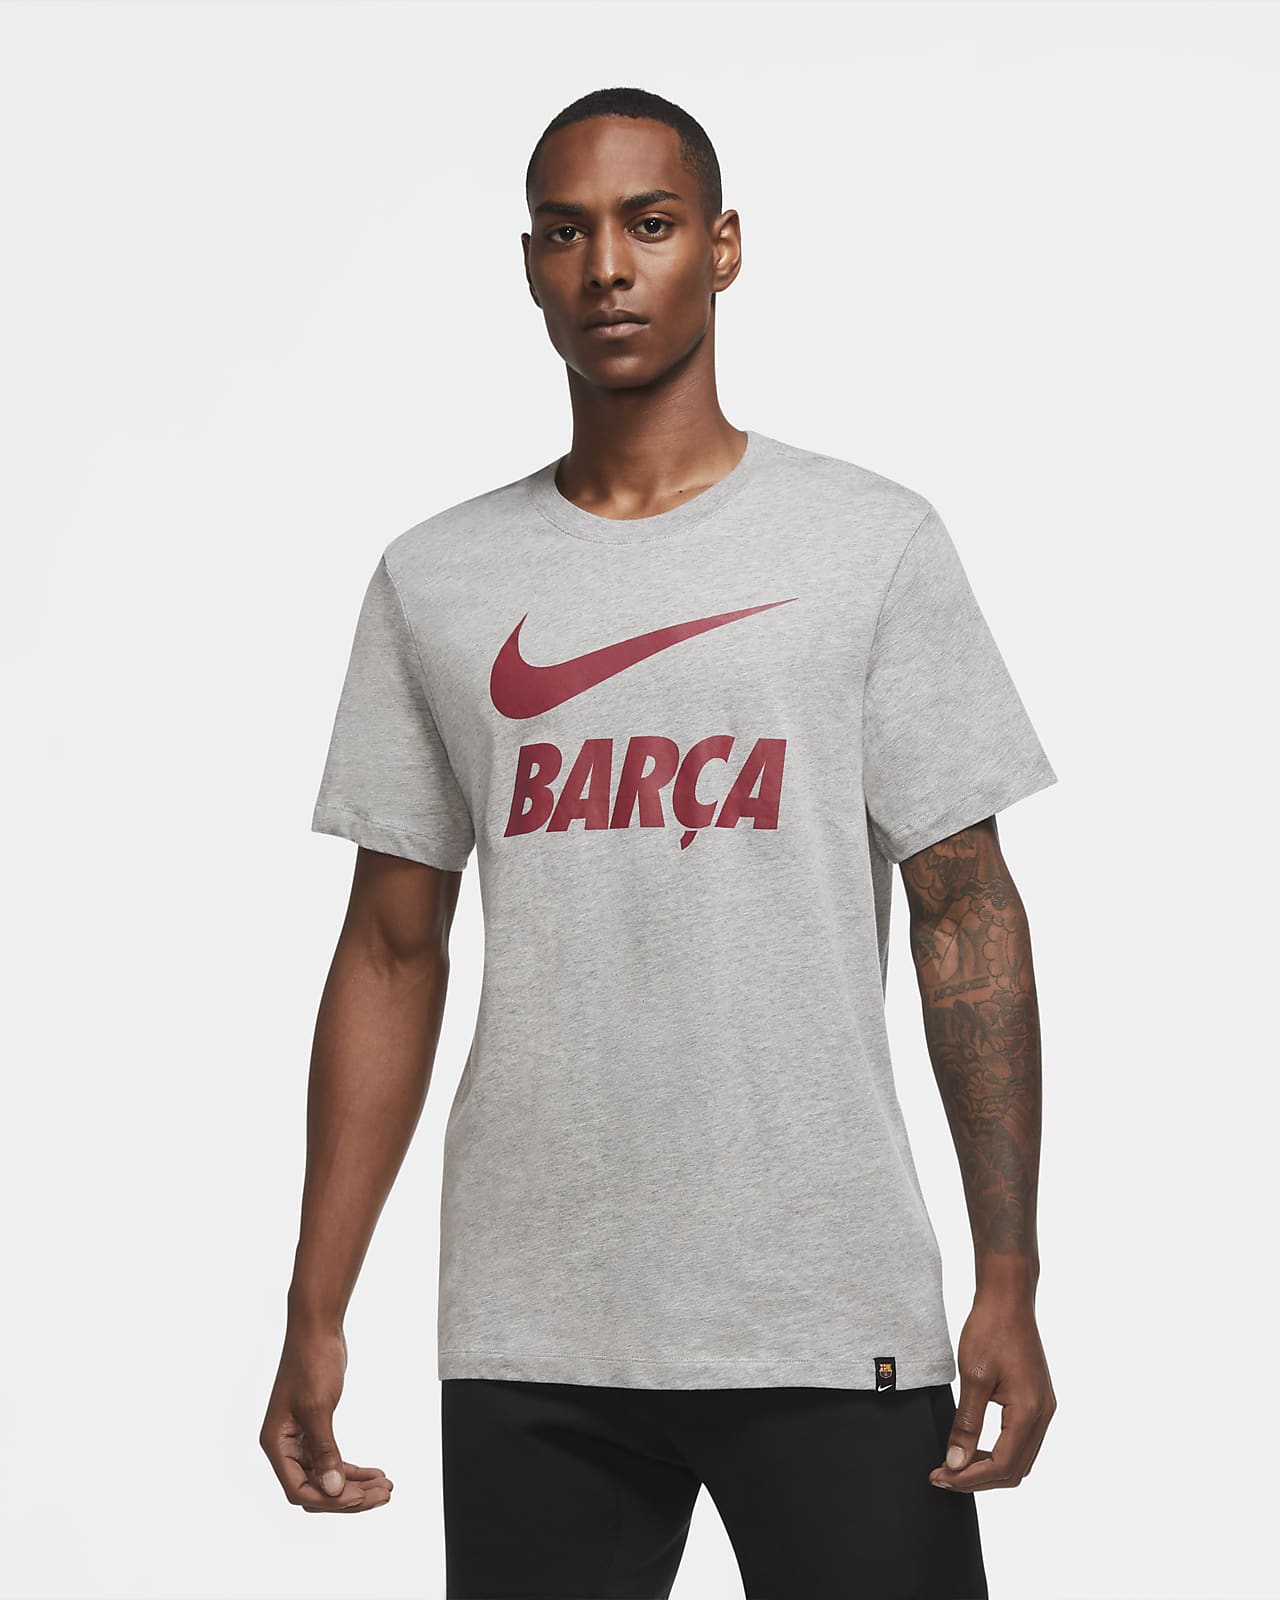 barcelona t shirt nike